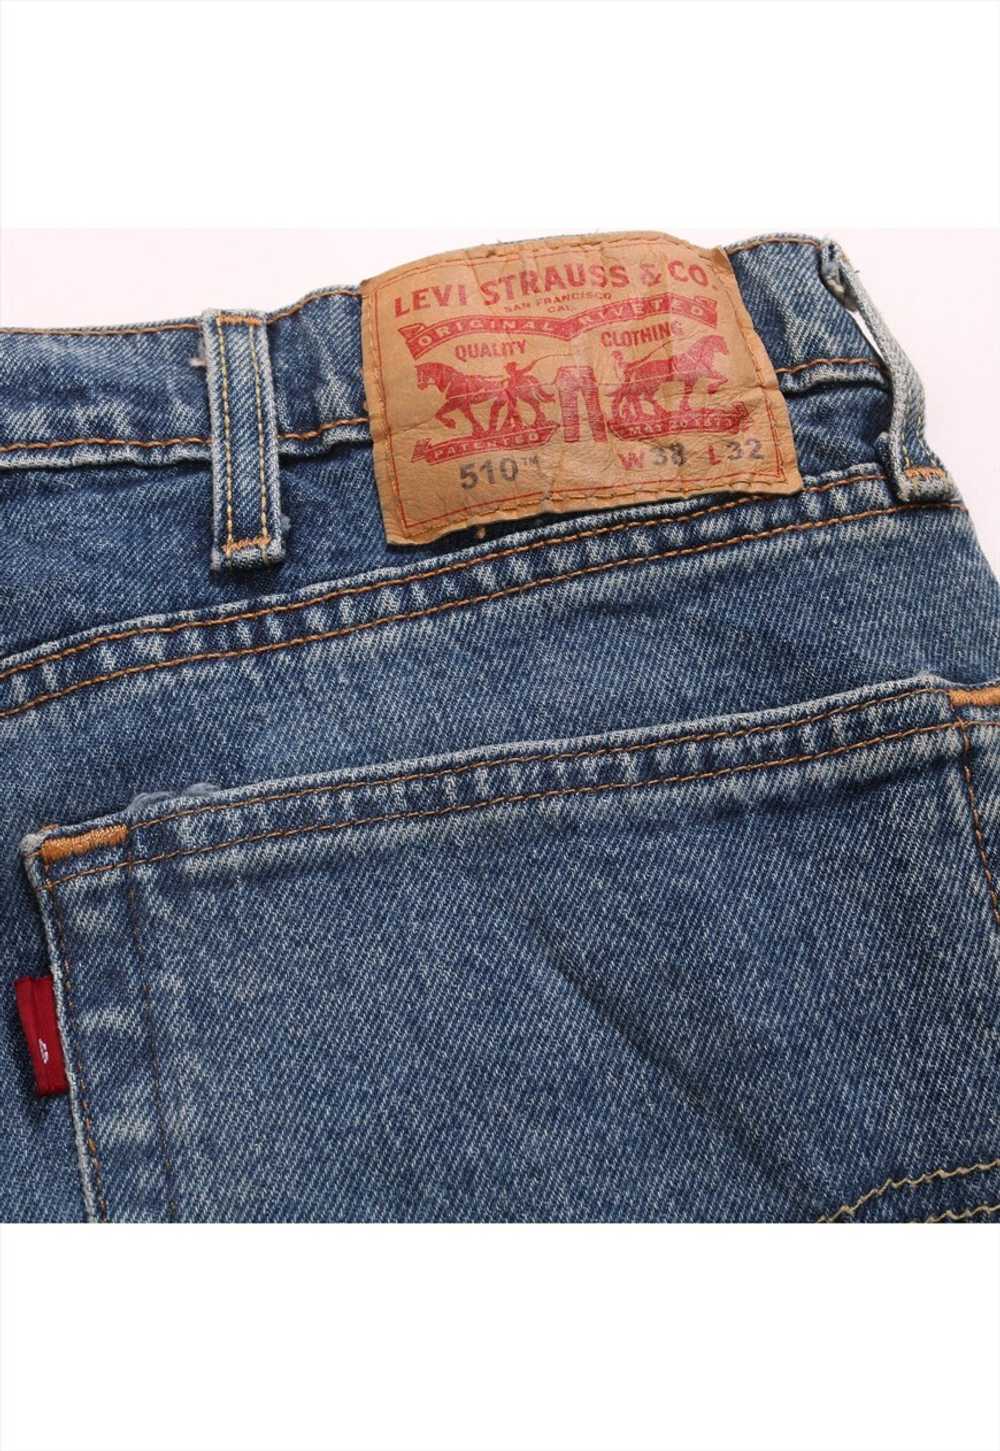 Vintage 90's Levi's Jeans / Pants 510 Denim Slim … - image 4